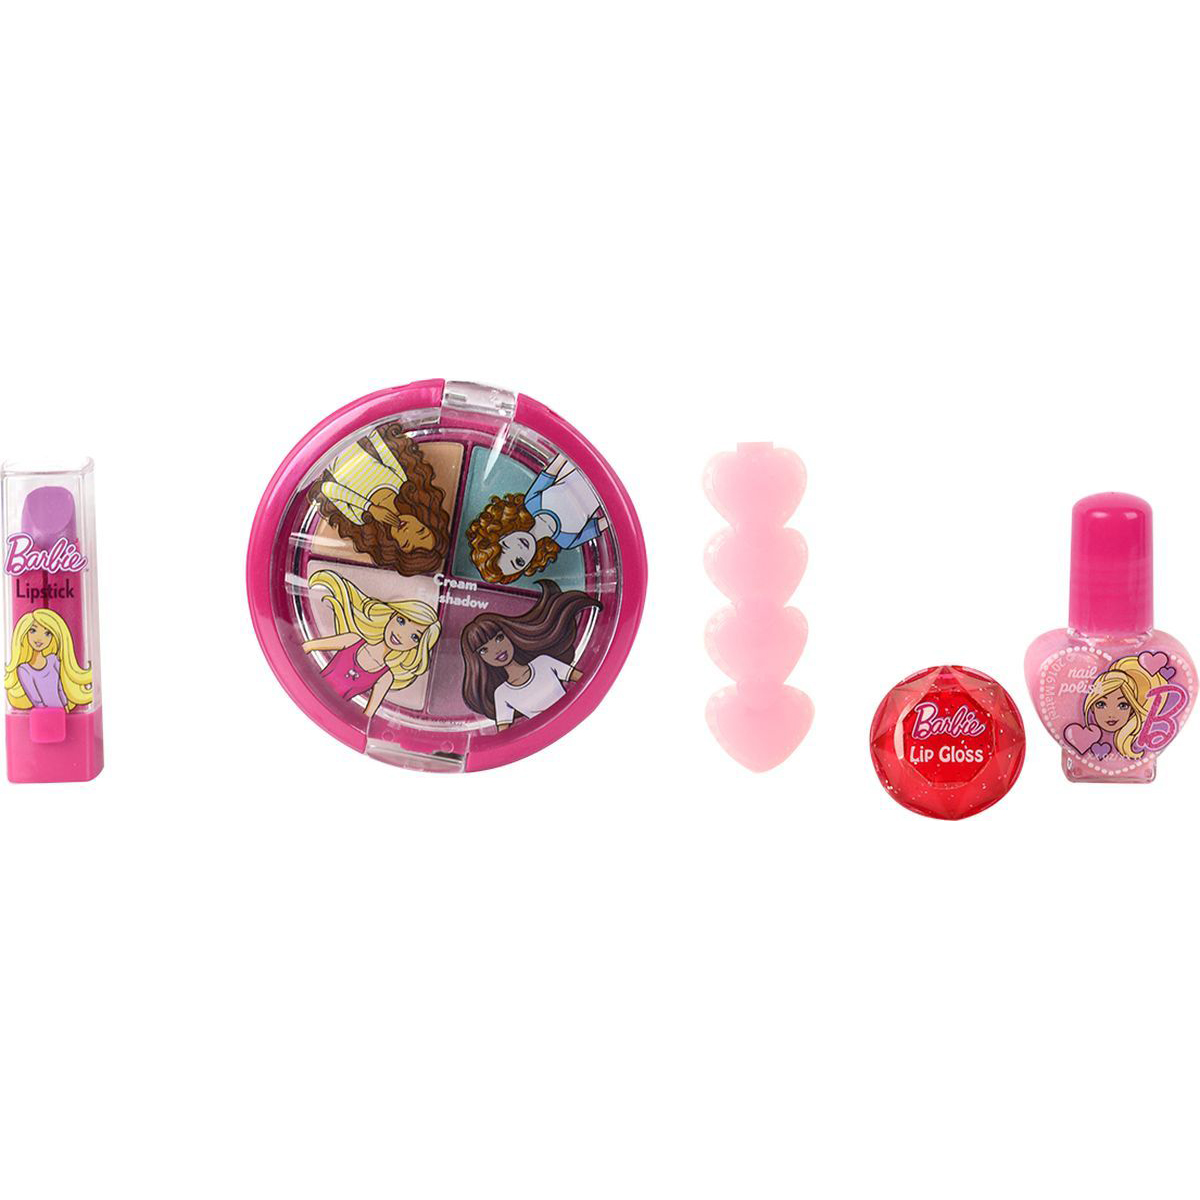 Игровой набор детской декоративной косметики - Barbie с рюкзаком  